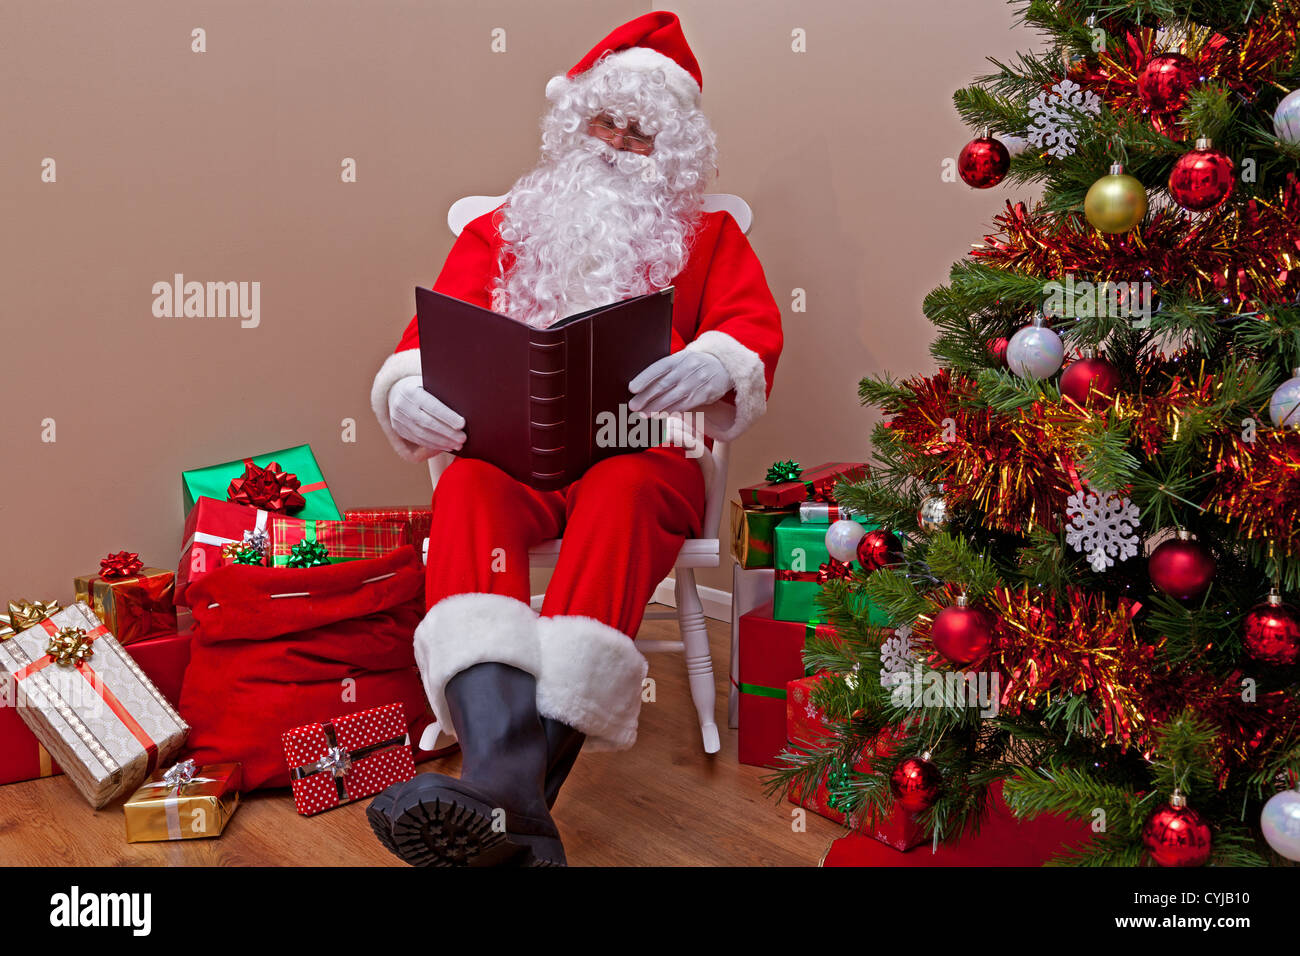 Santa Claus était assis dans une chaise à bascule la lecture de la 'liste' Gentil ou méchant entouré de gift wrapped presents. Banque D'Images